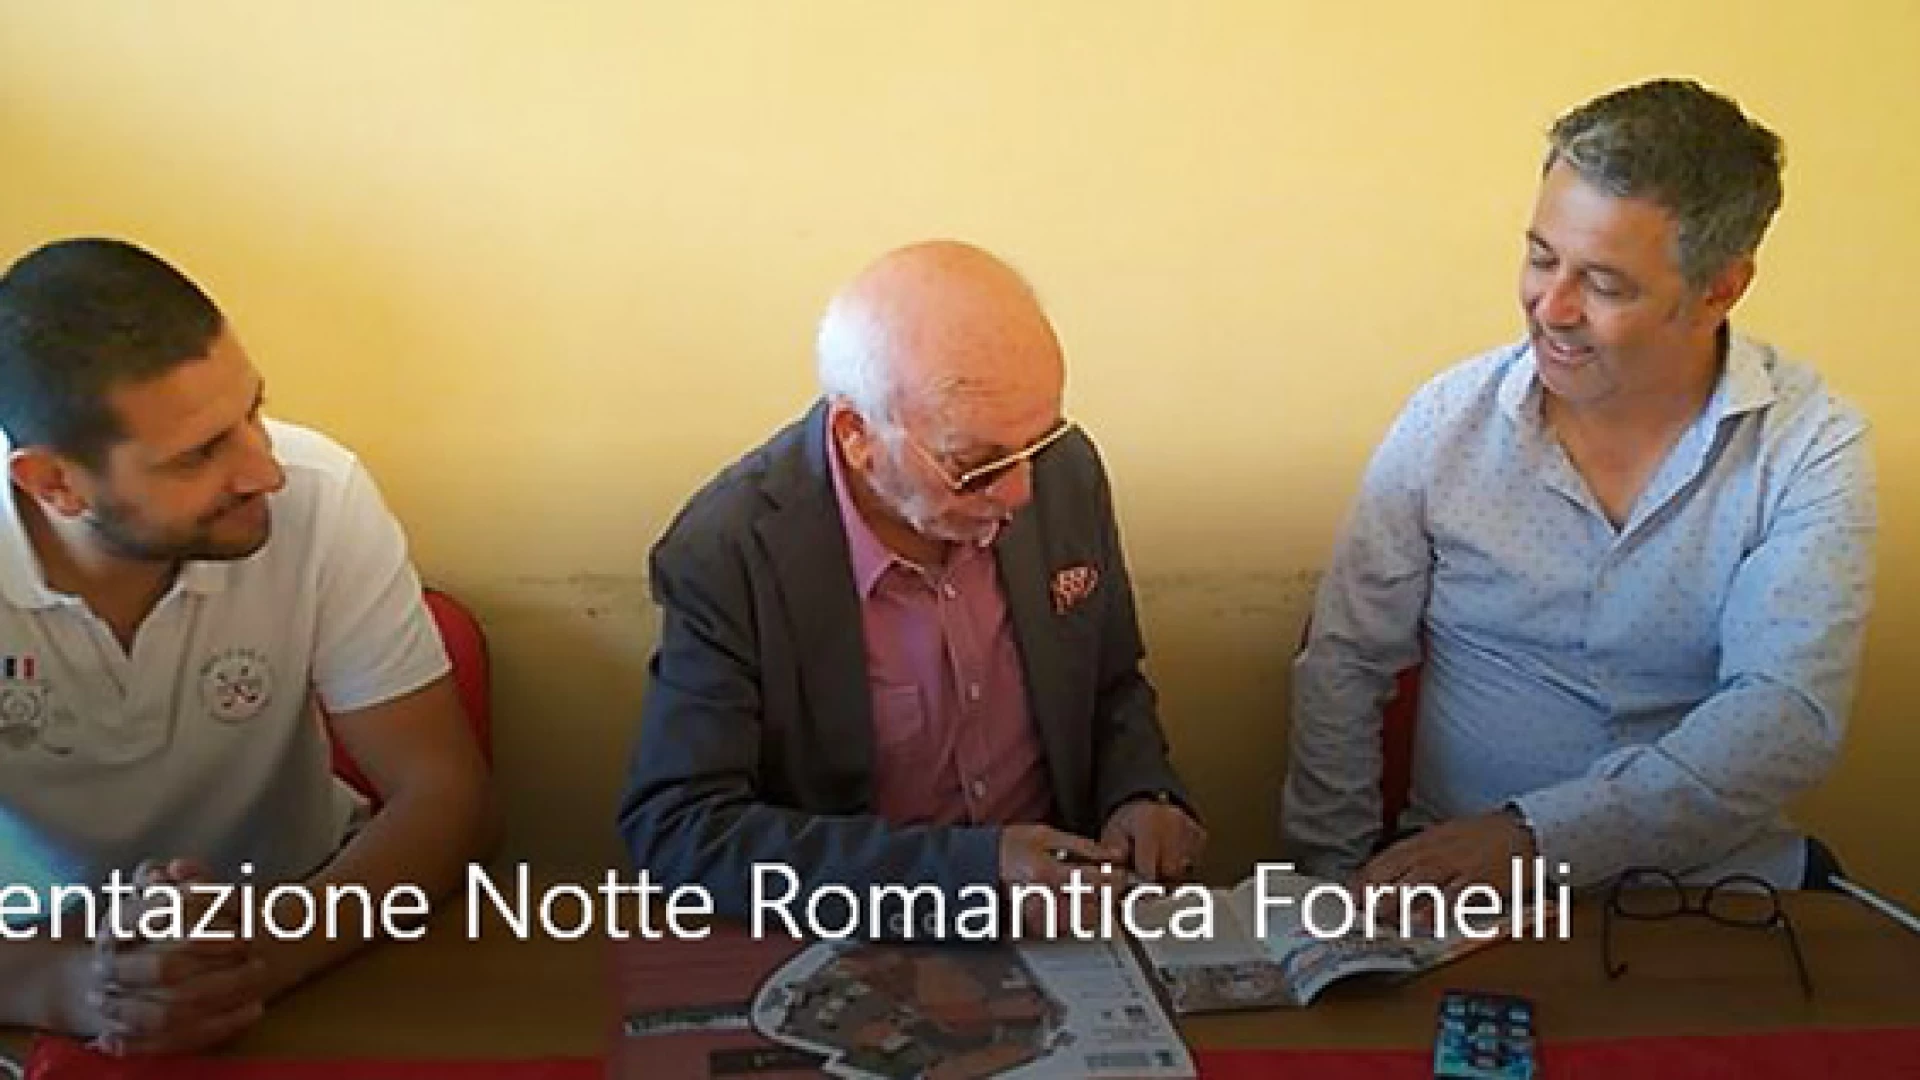 Fornelli: Il Borgo Medievale si accende d'amore. Presentata la terza edizione della Notte Romantica. Guarda il video